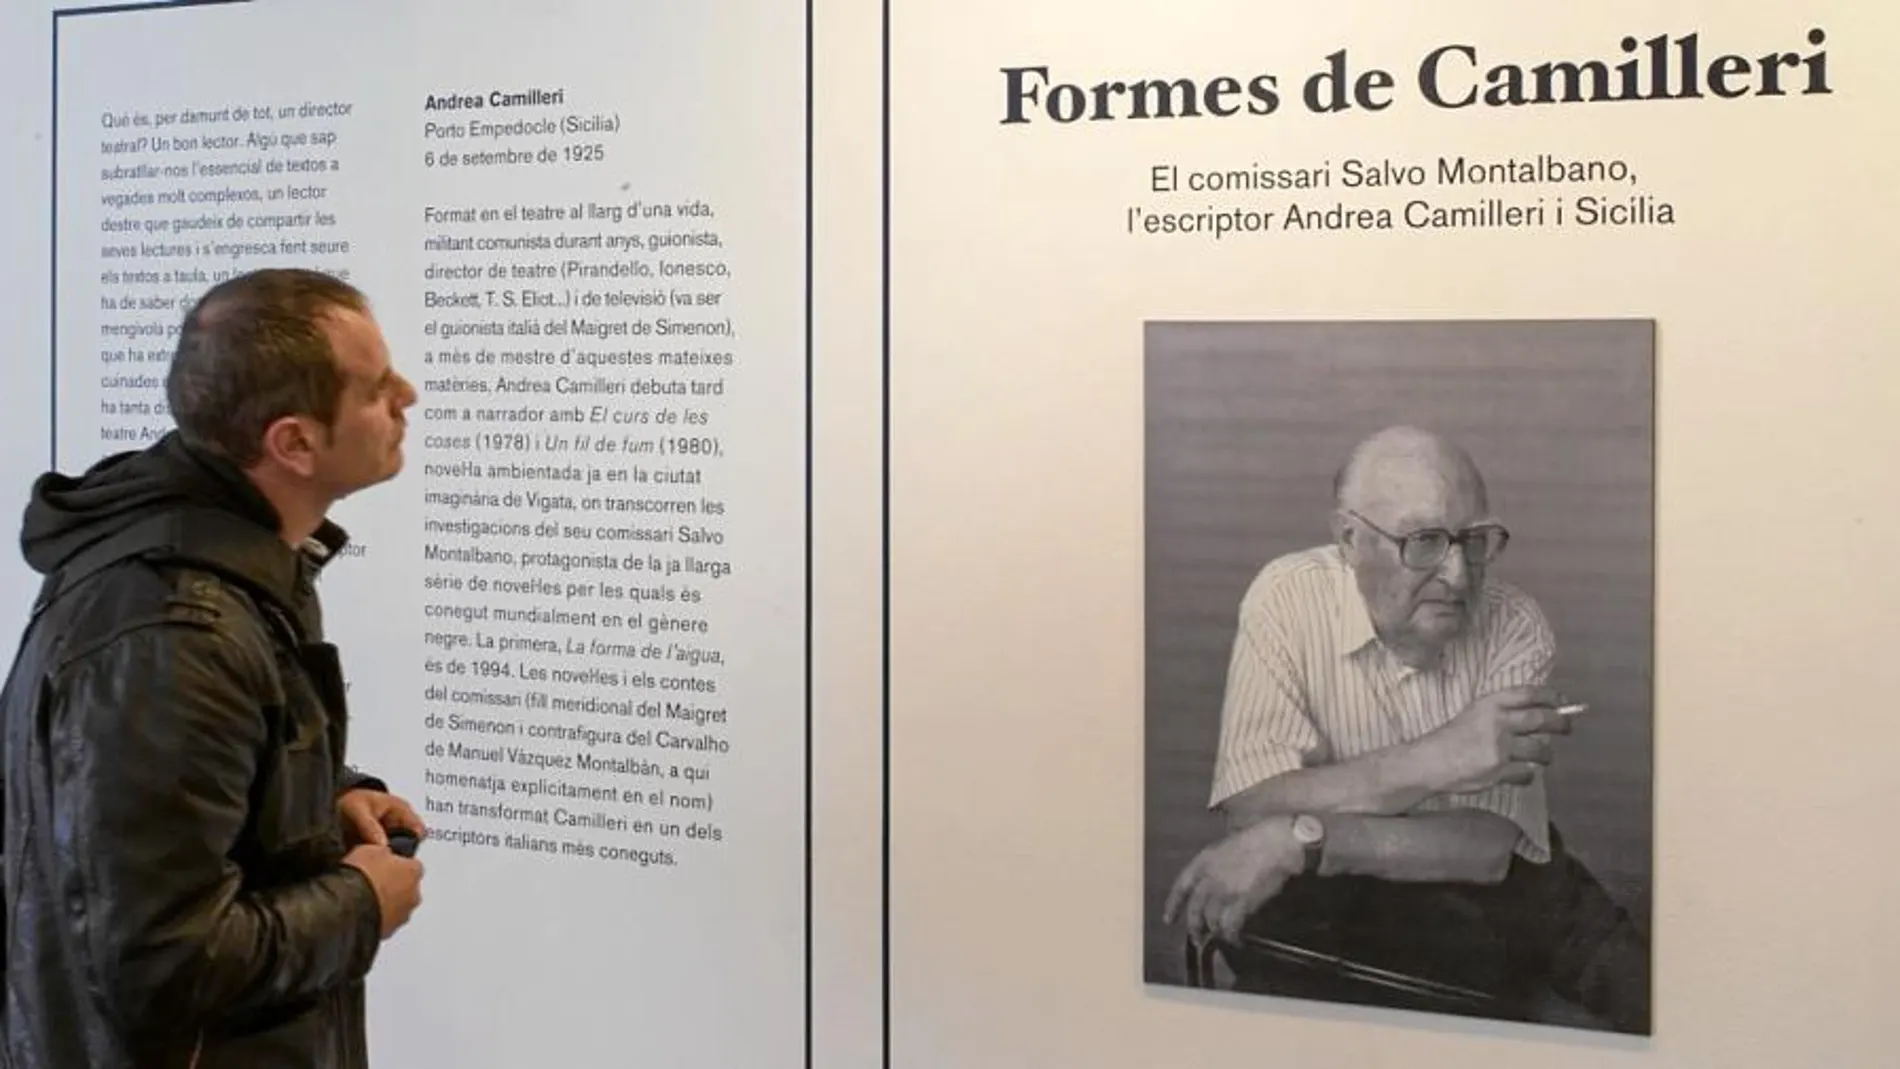 Un visitante en la muestra de la Biblioteca Jaume Fuster contempla el retrato de Andrea Camilleri